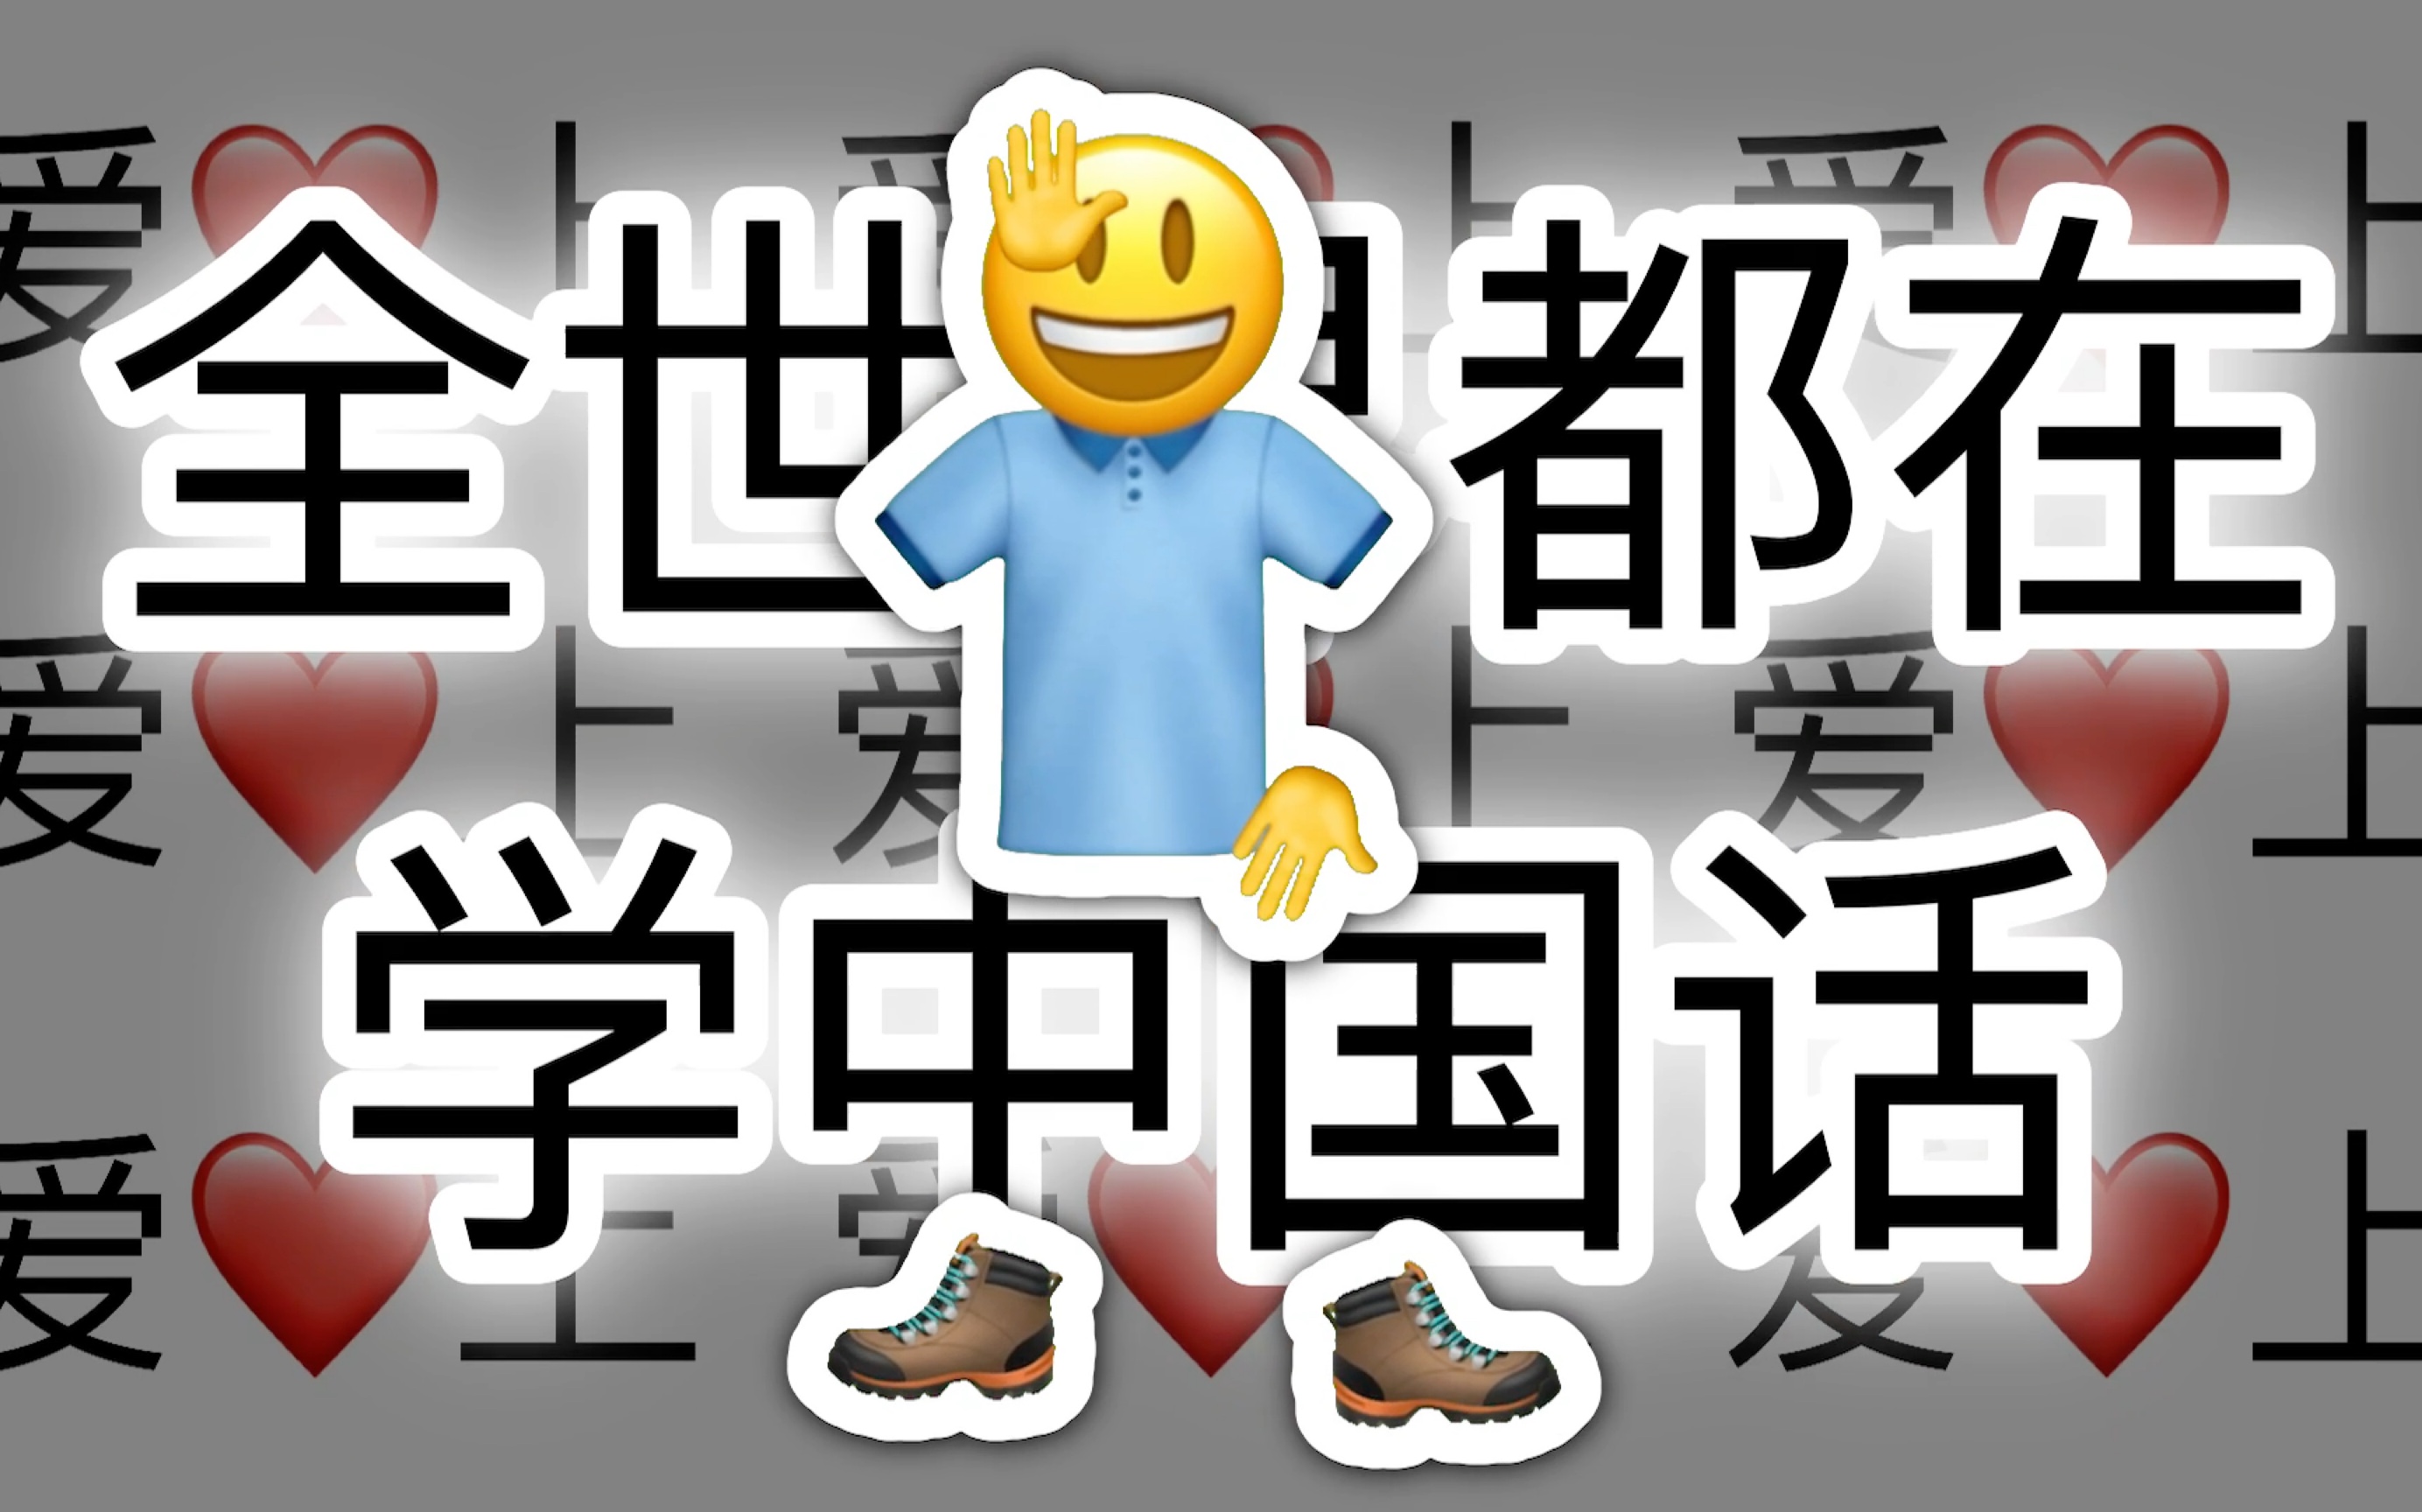 全世界都在讲中国话【emoji】